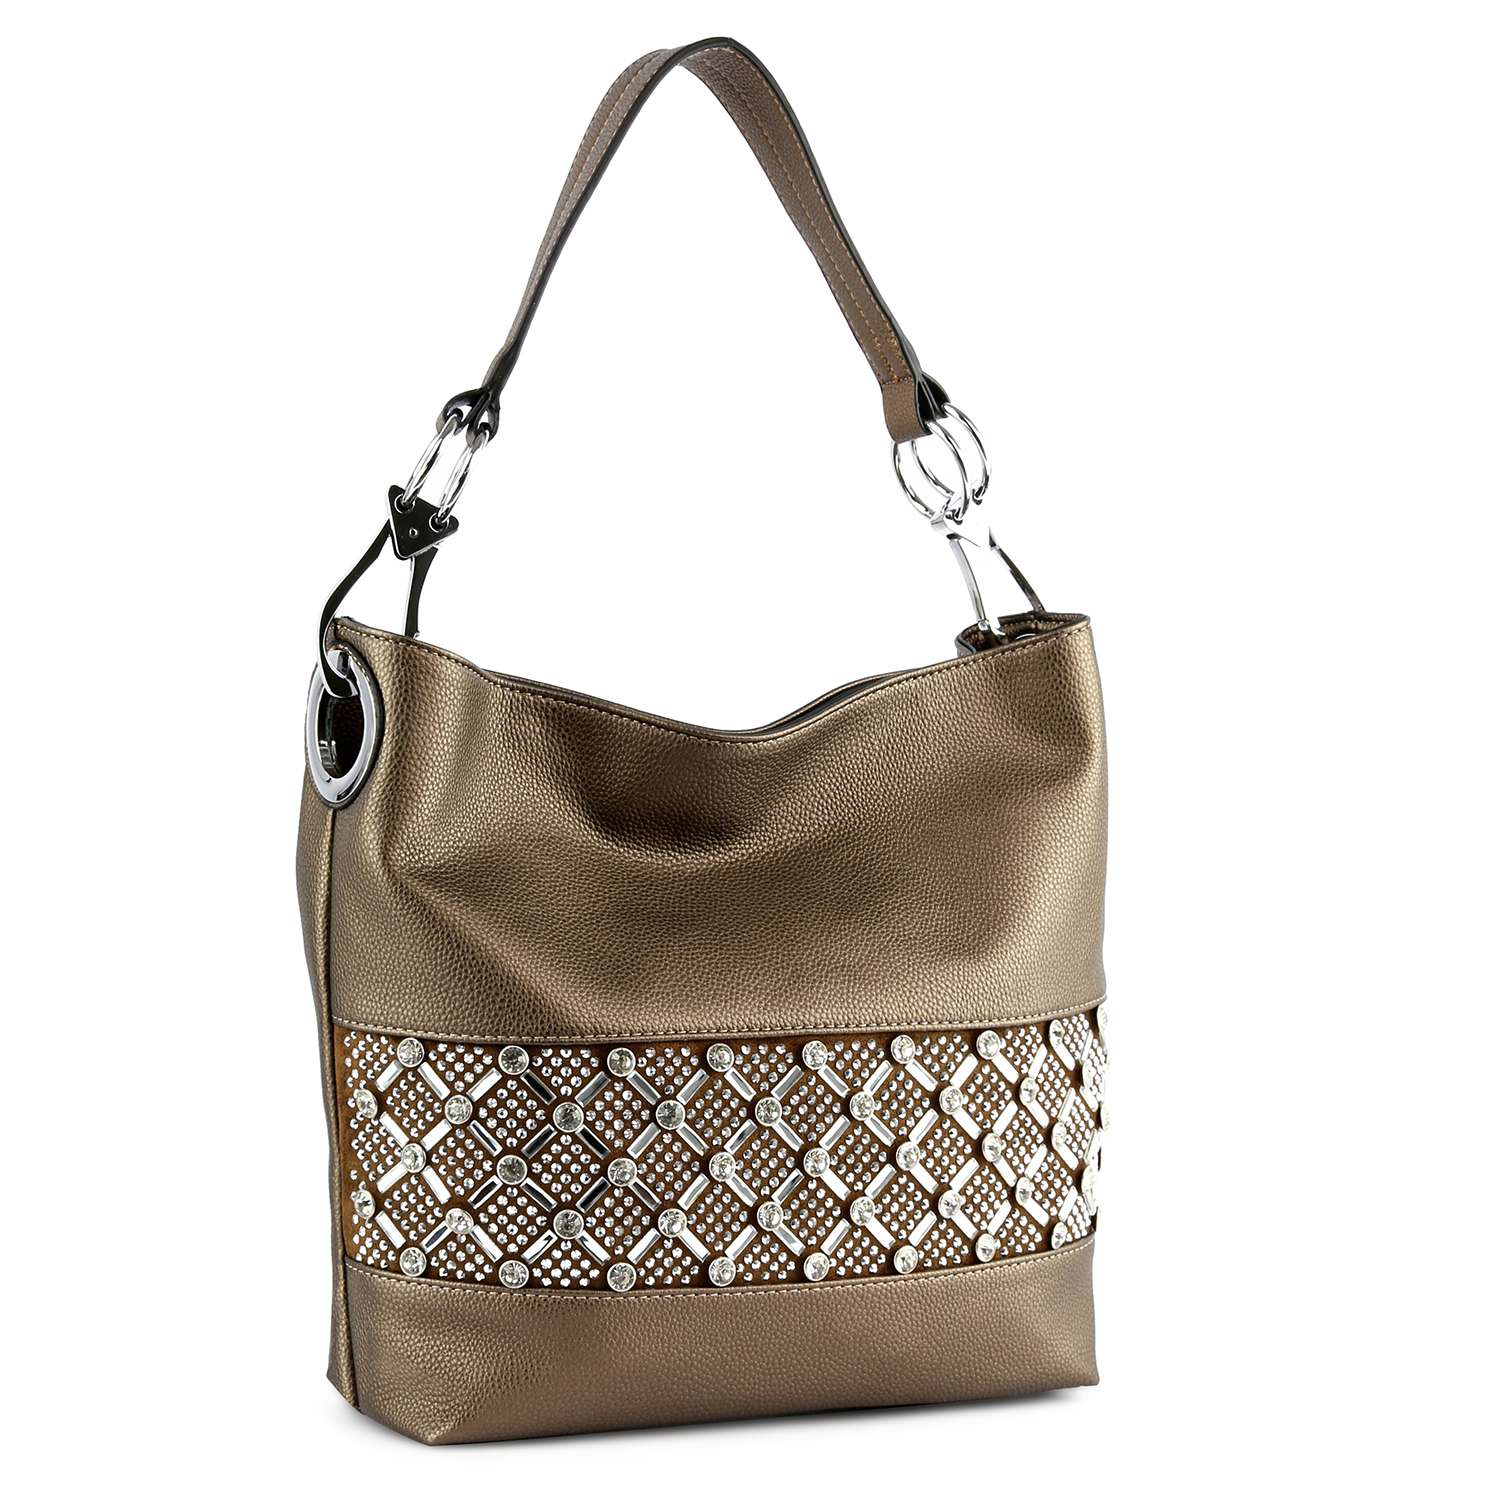 Rhinestone Bling Design Hobo Handbag - Bronze